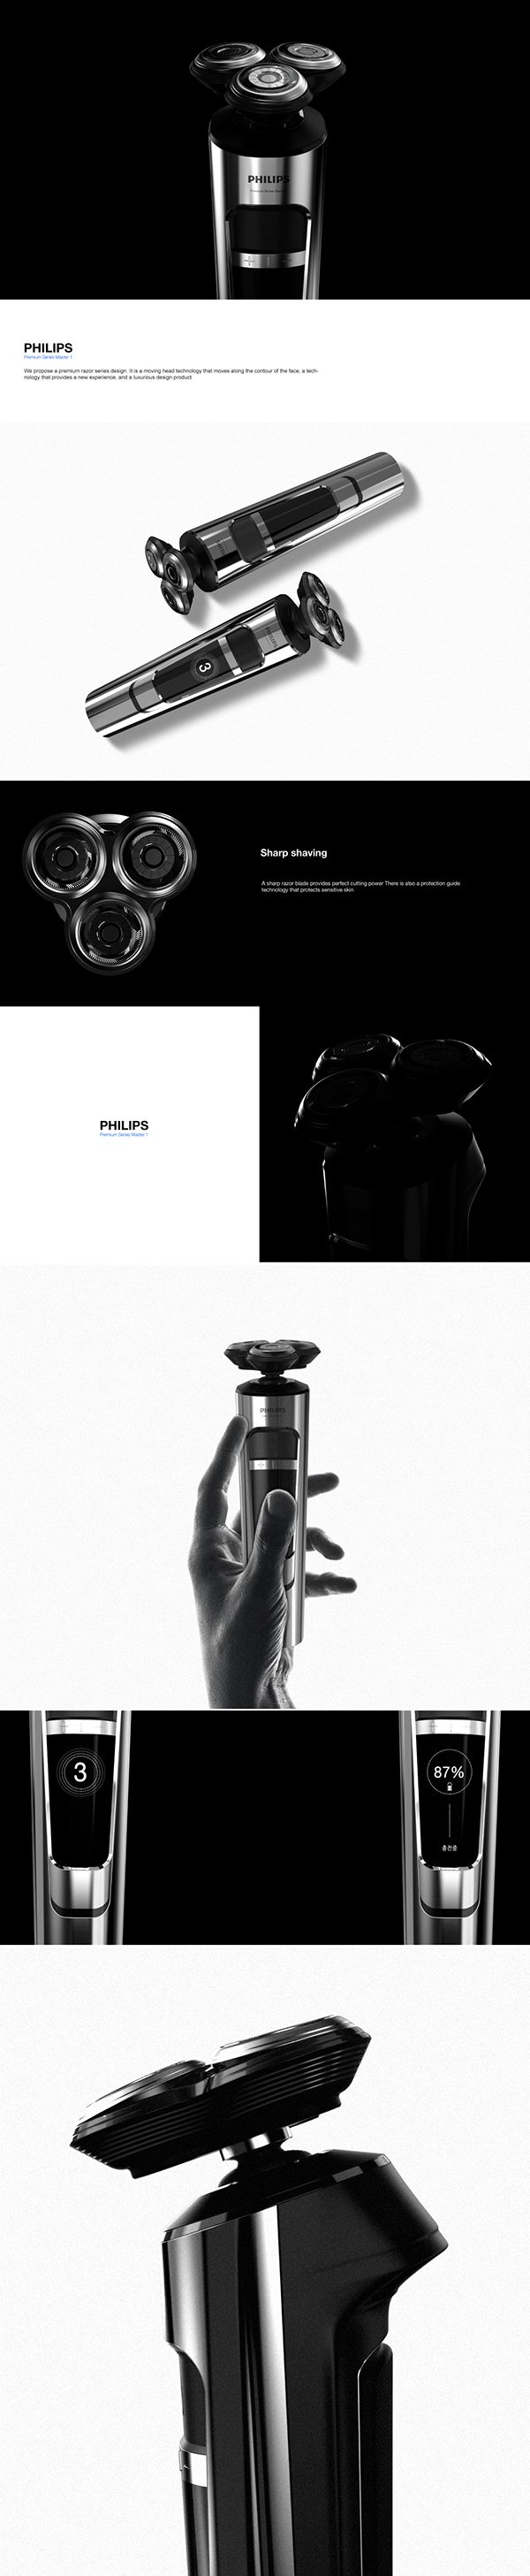 Philips Premium Series Master 1